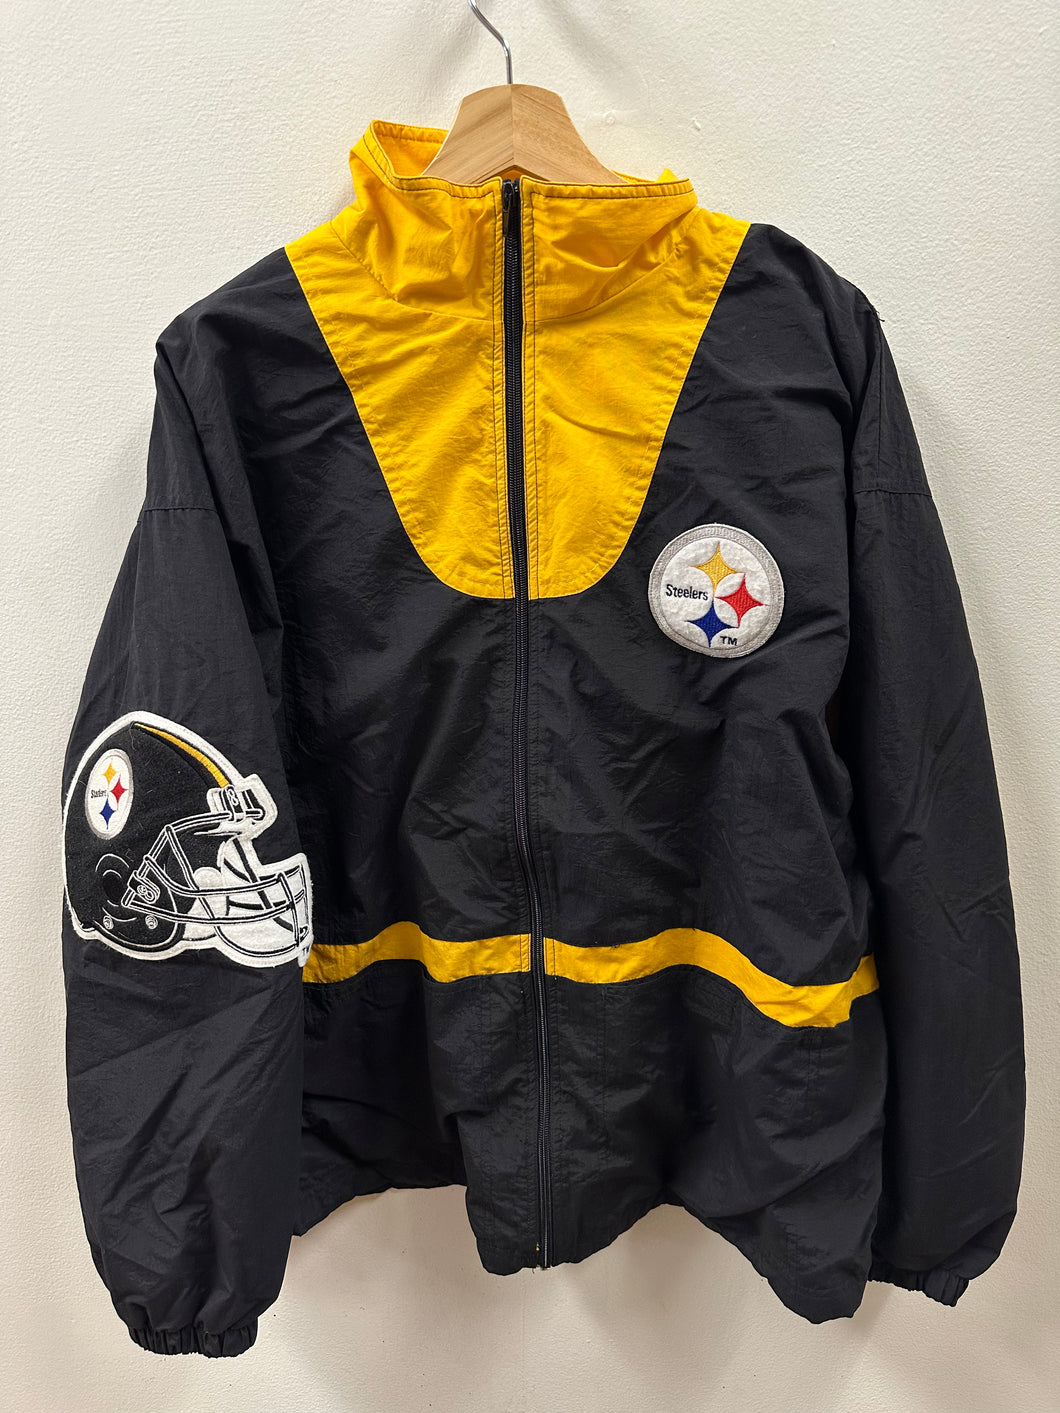 Pittsburgh Steelers Windbreaker Jacket